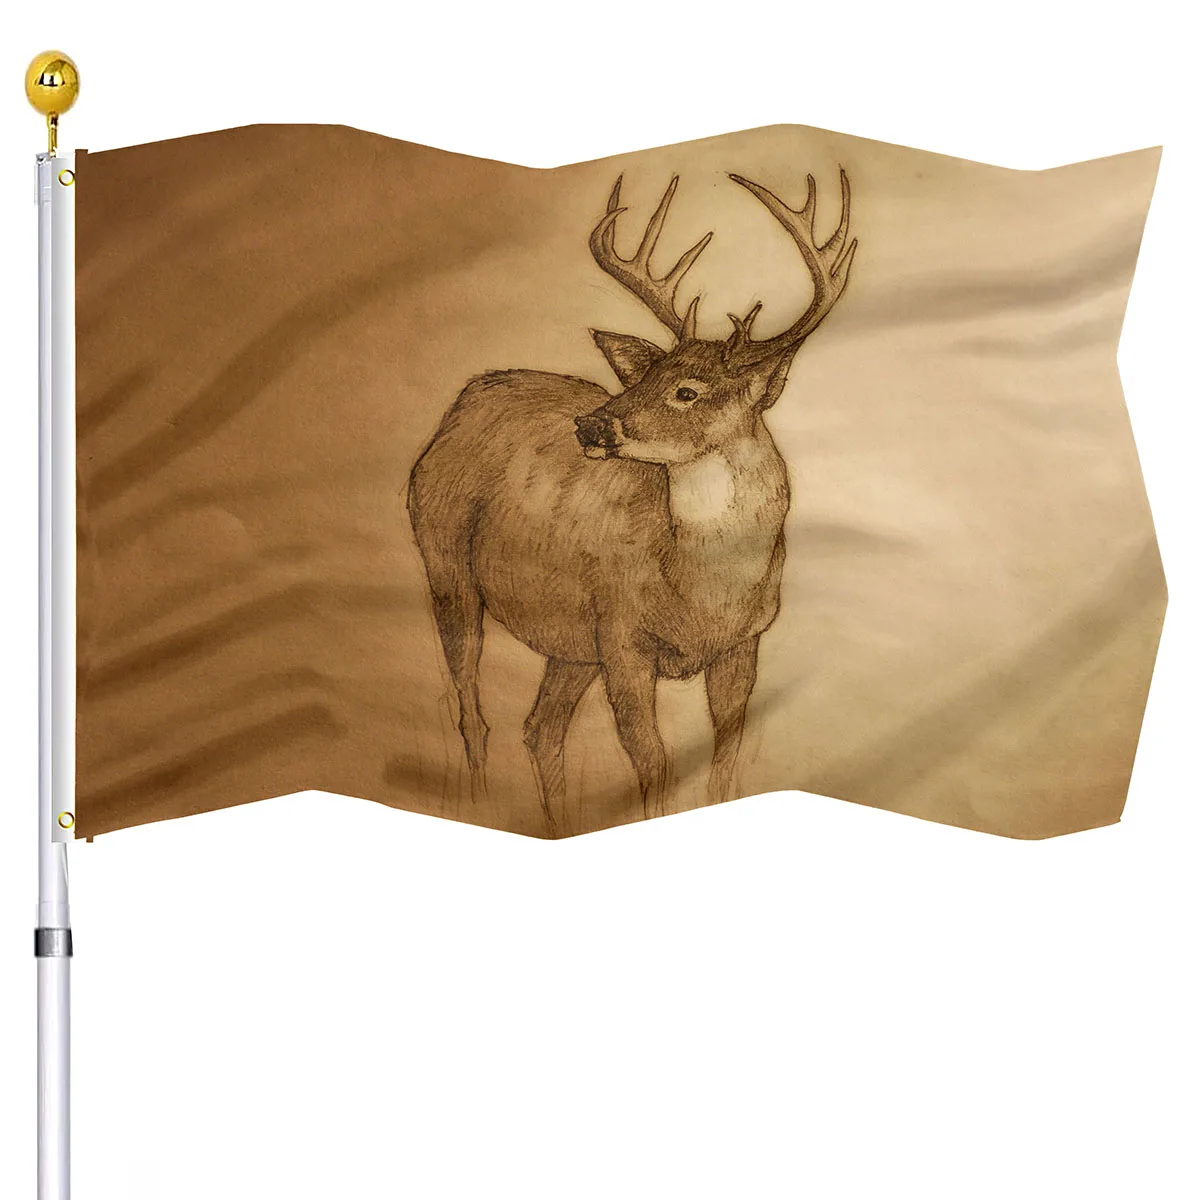 Görüntü /176324-Vahşi-geyik-bayrağı-ev-partisi-dekorasyon-için_cdn/share-3.jpeg